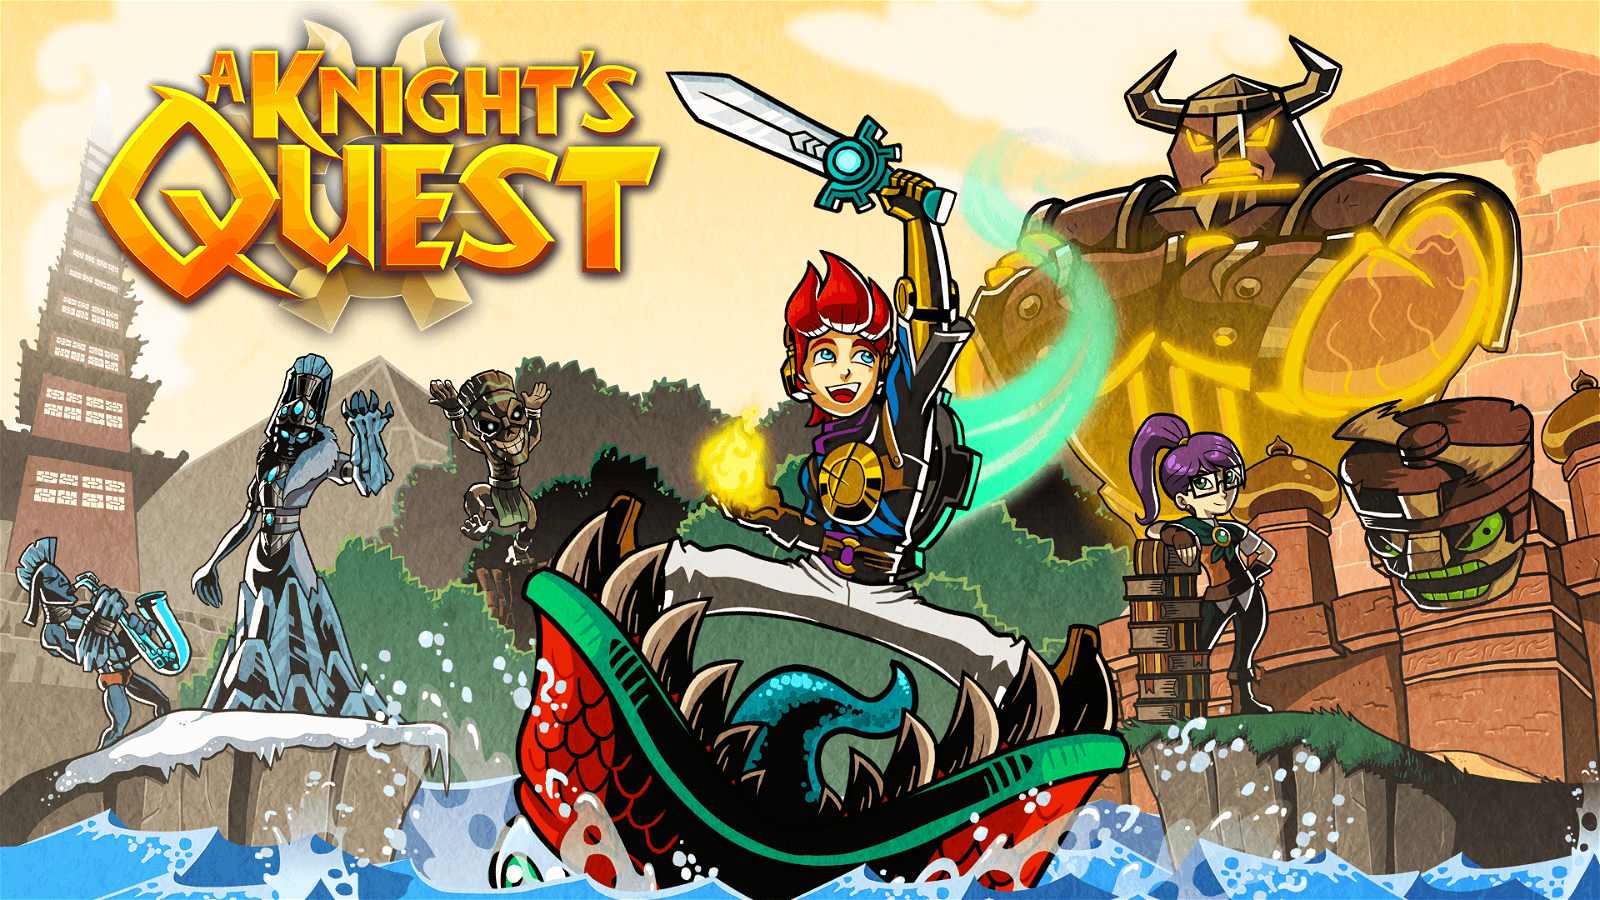 A Knight's Quest arriva su PC e console questo autunno